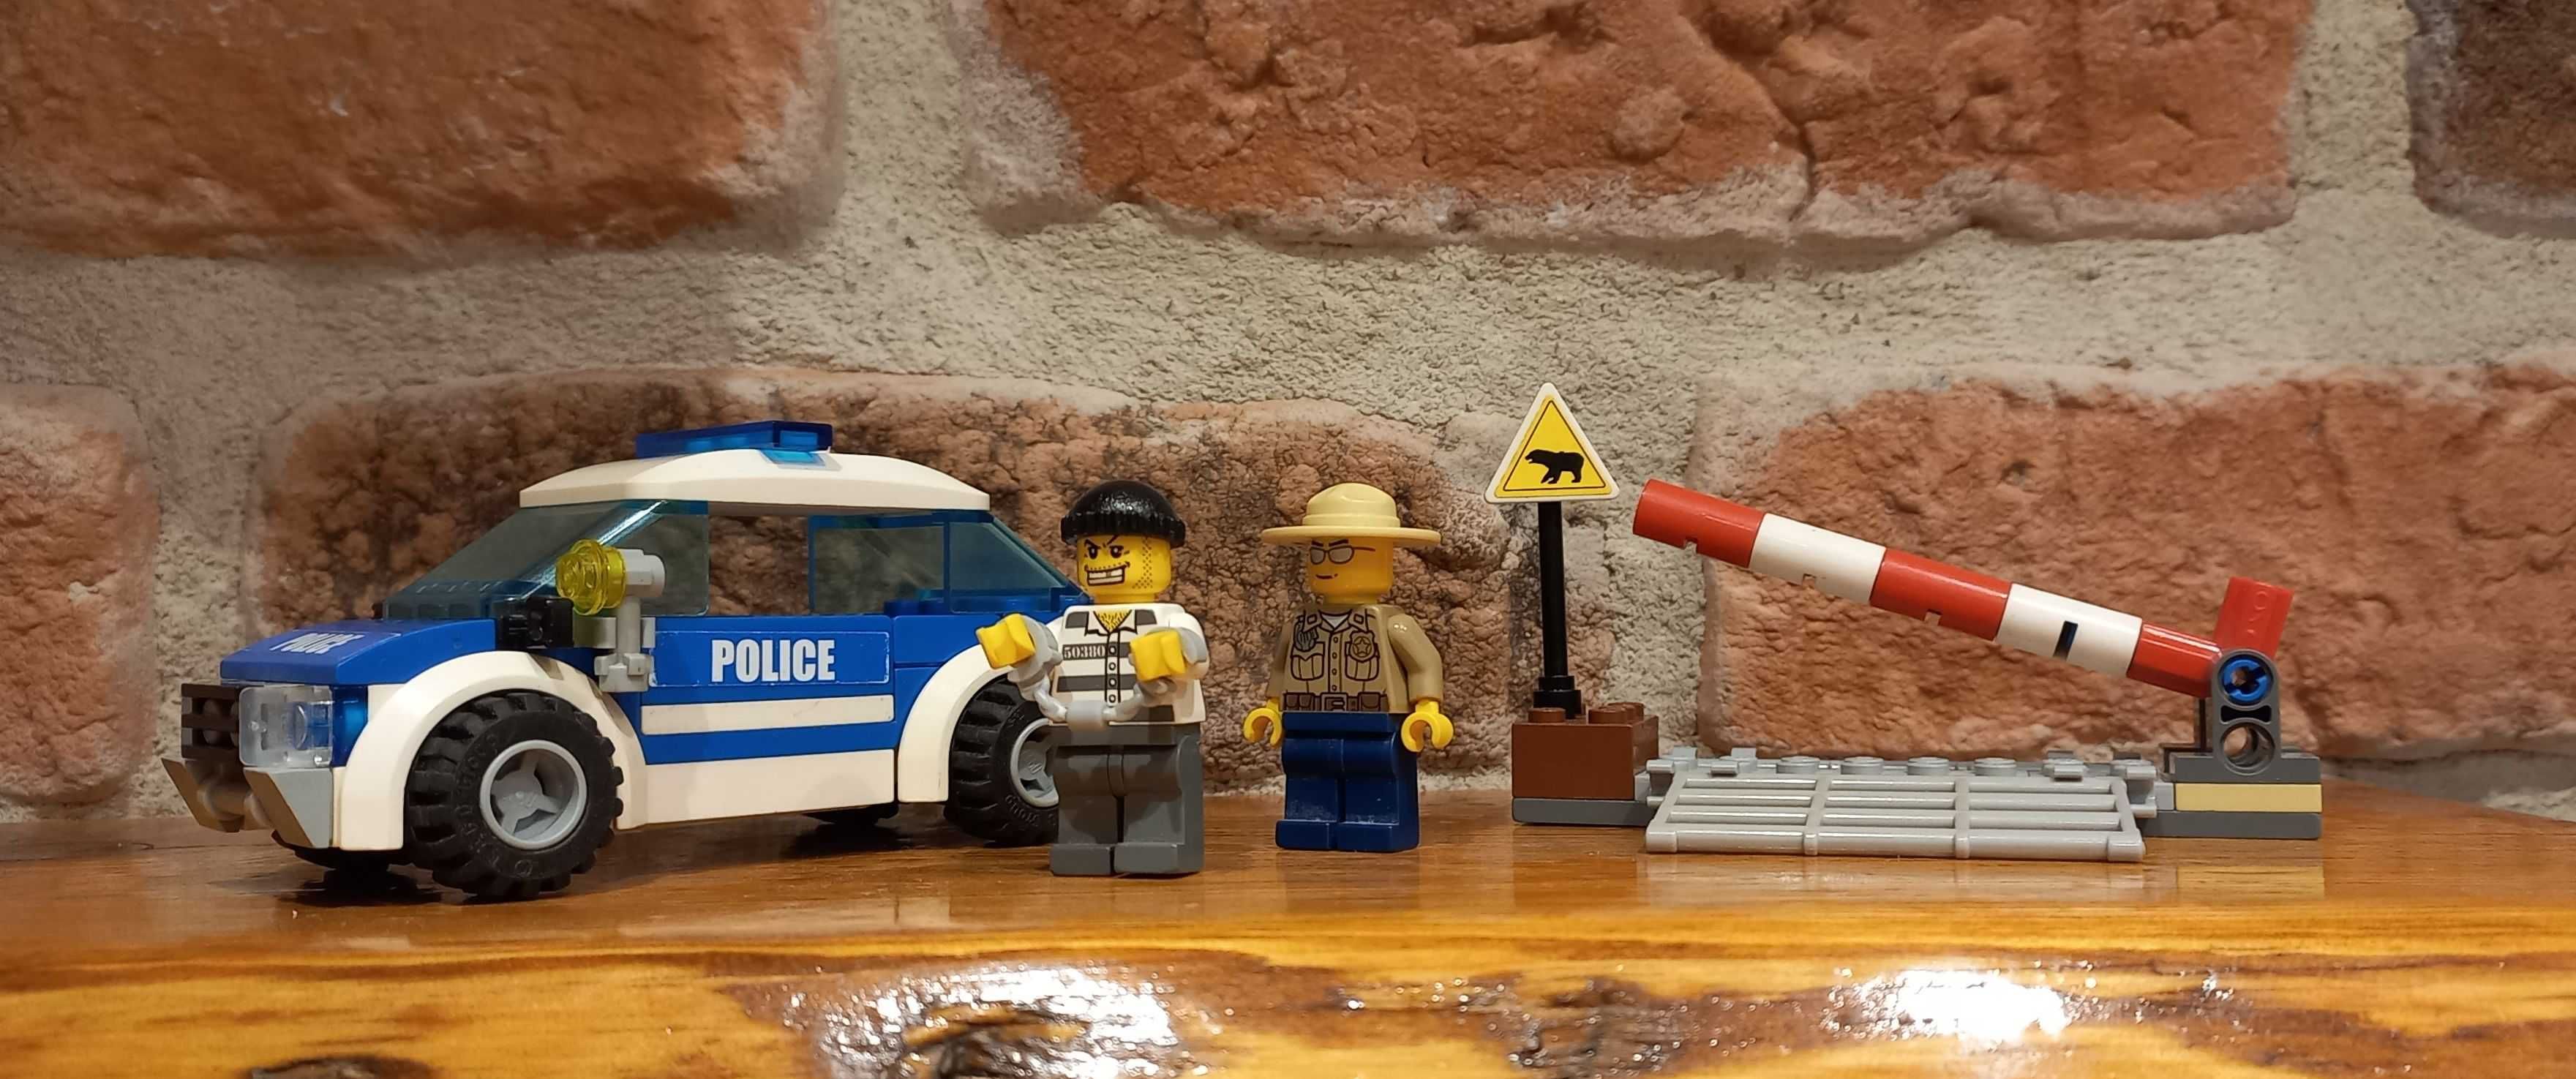 LEGO CITY 4436 - Wóz Patrolowy - zestaw z 2012 roku